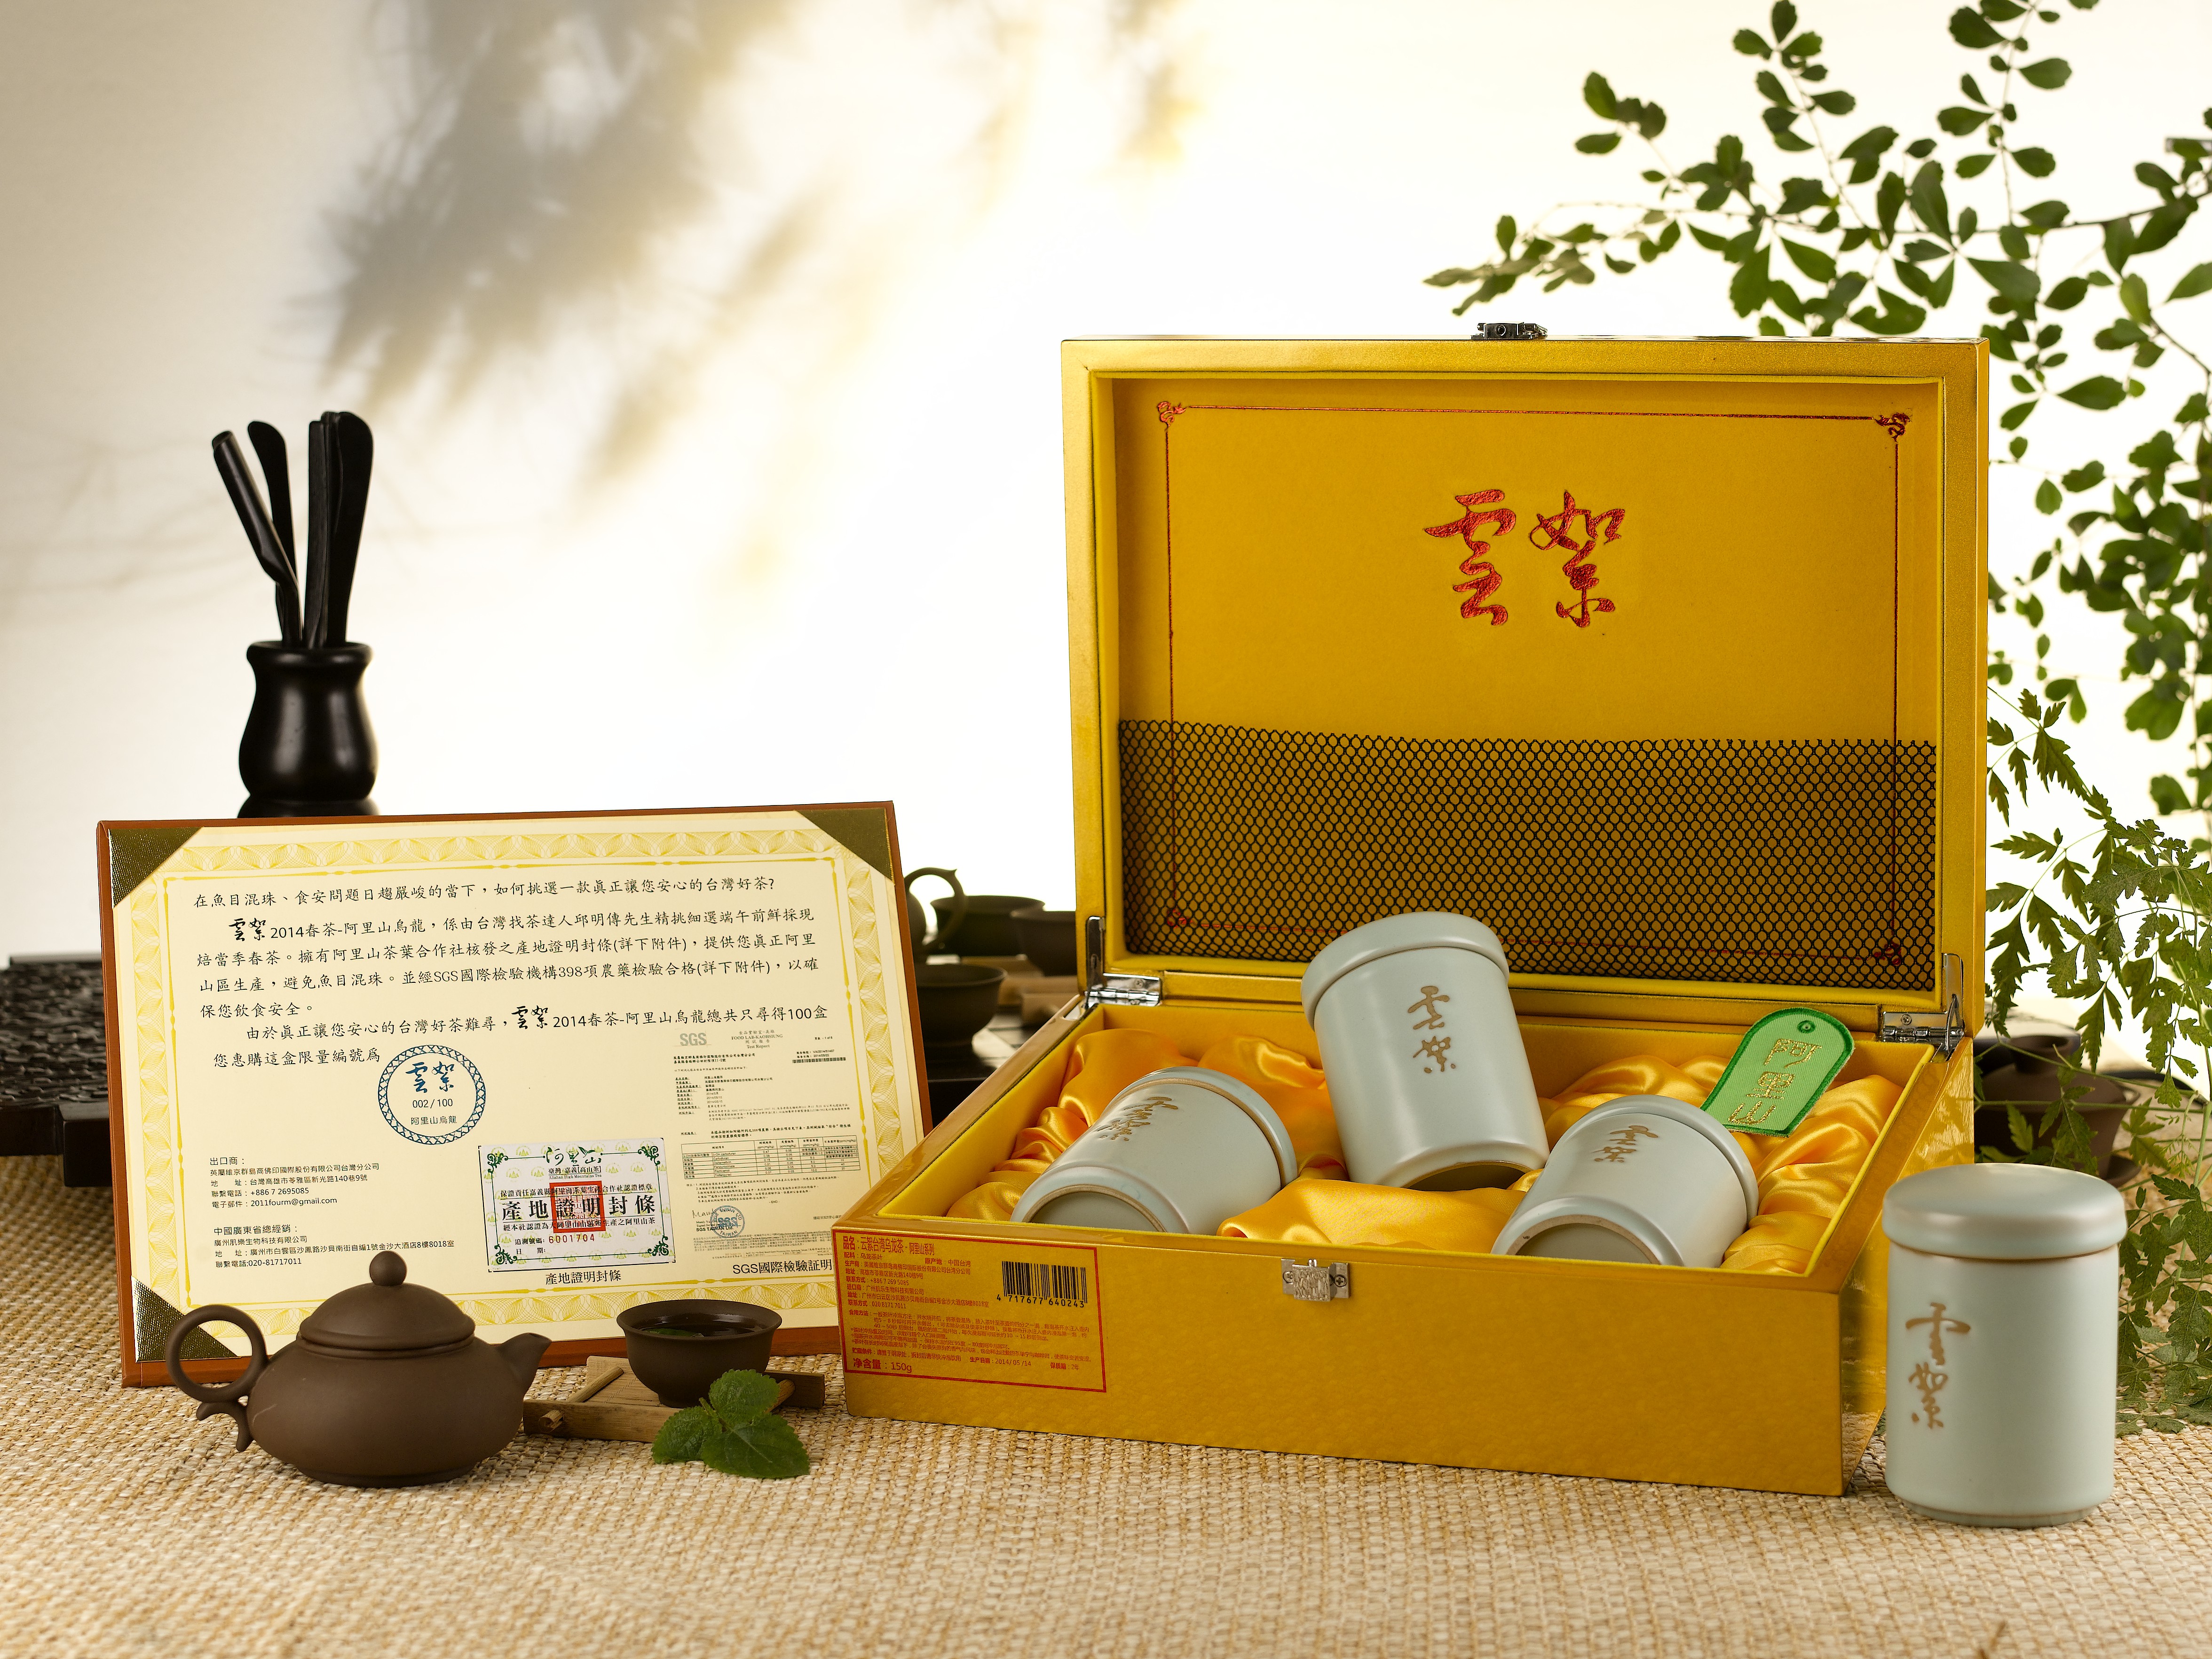 揭开台湾高山茶神秘面纱的一本族谱